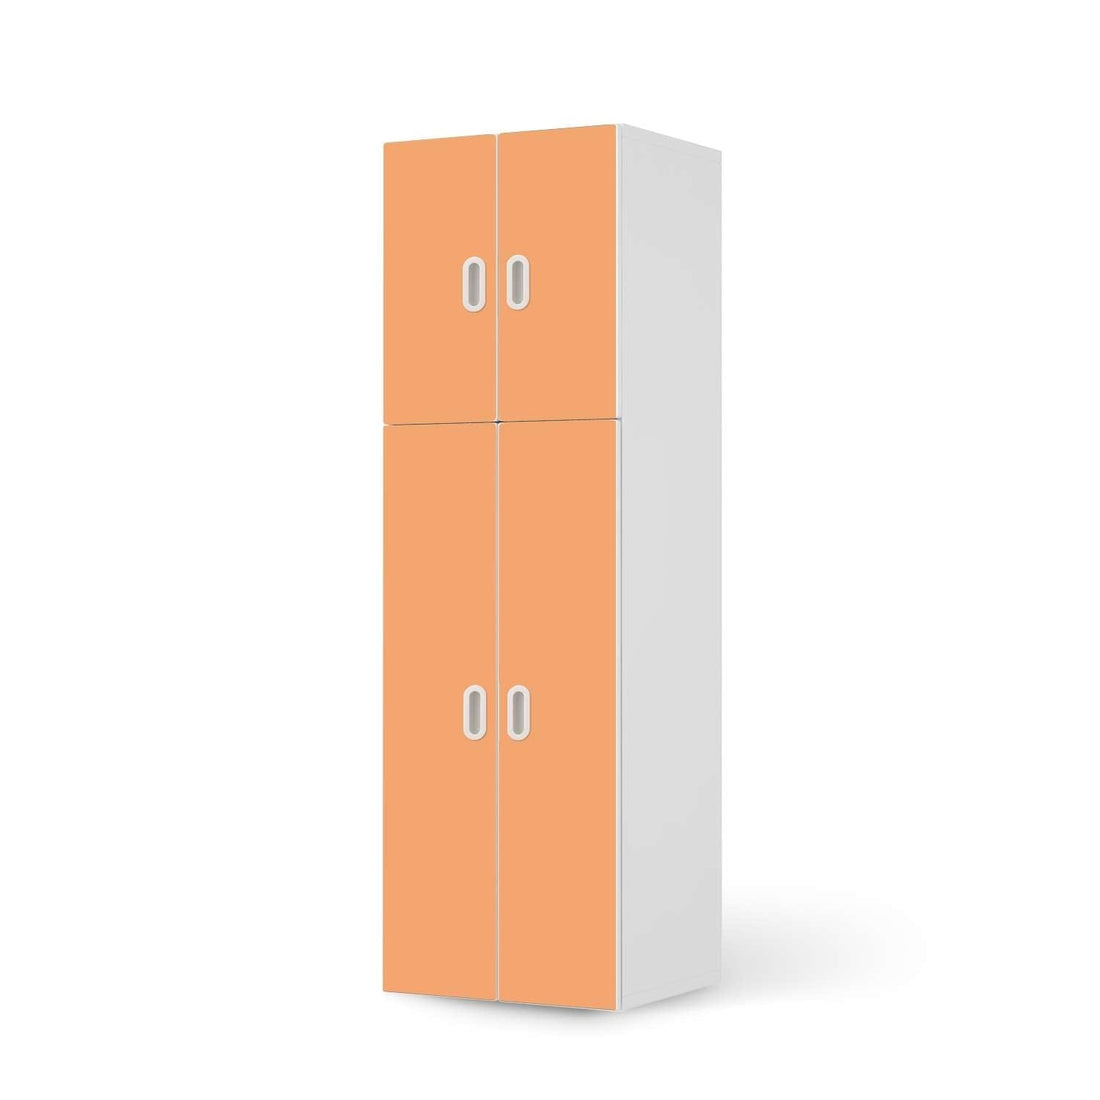 Selbstklebende Folie Orange Light - IKEA Stuva / Fritids kombiniert - 2 große Türen und 2 kleine Türen  - weiss